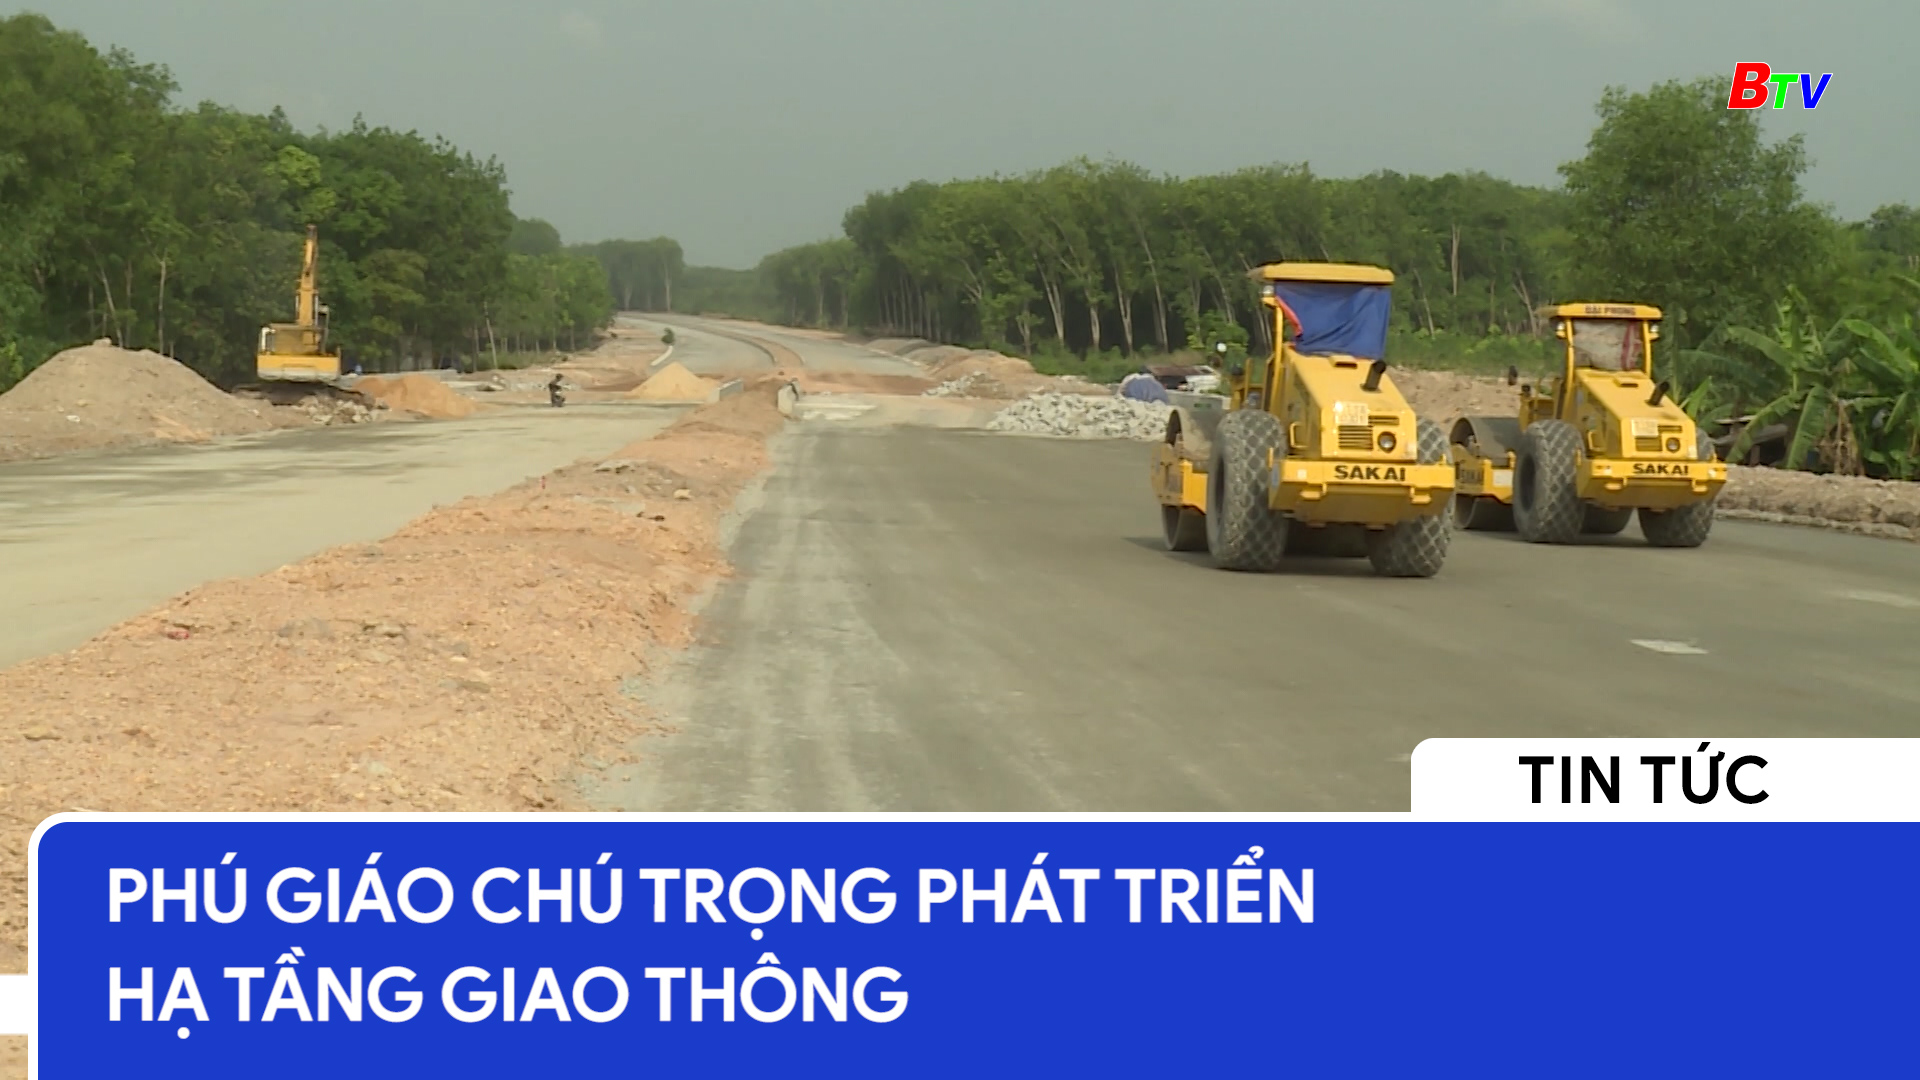 Phú Giáo chú trọng phát triển hạ tầng giao thông